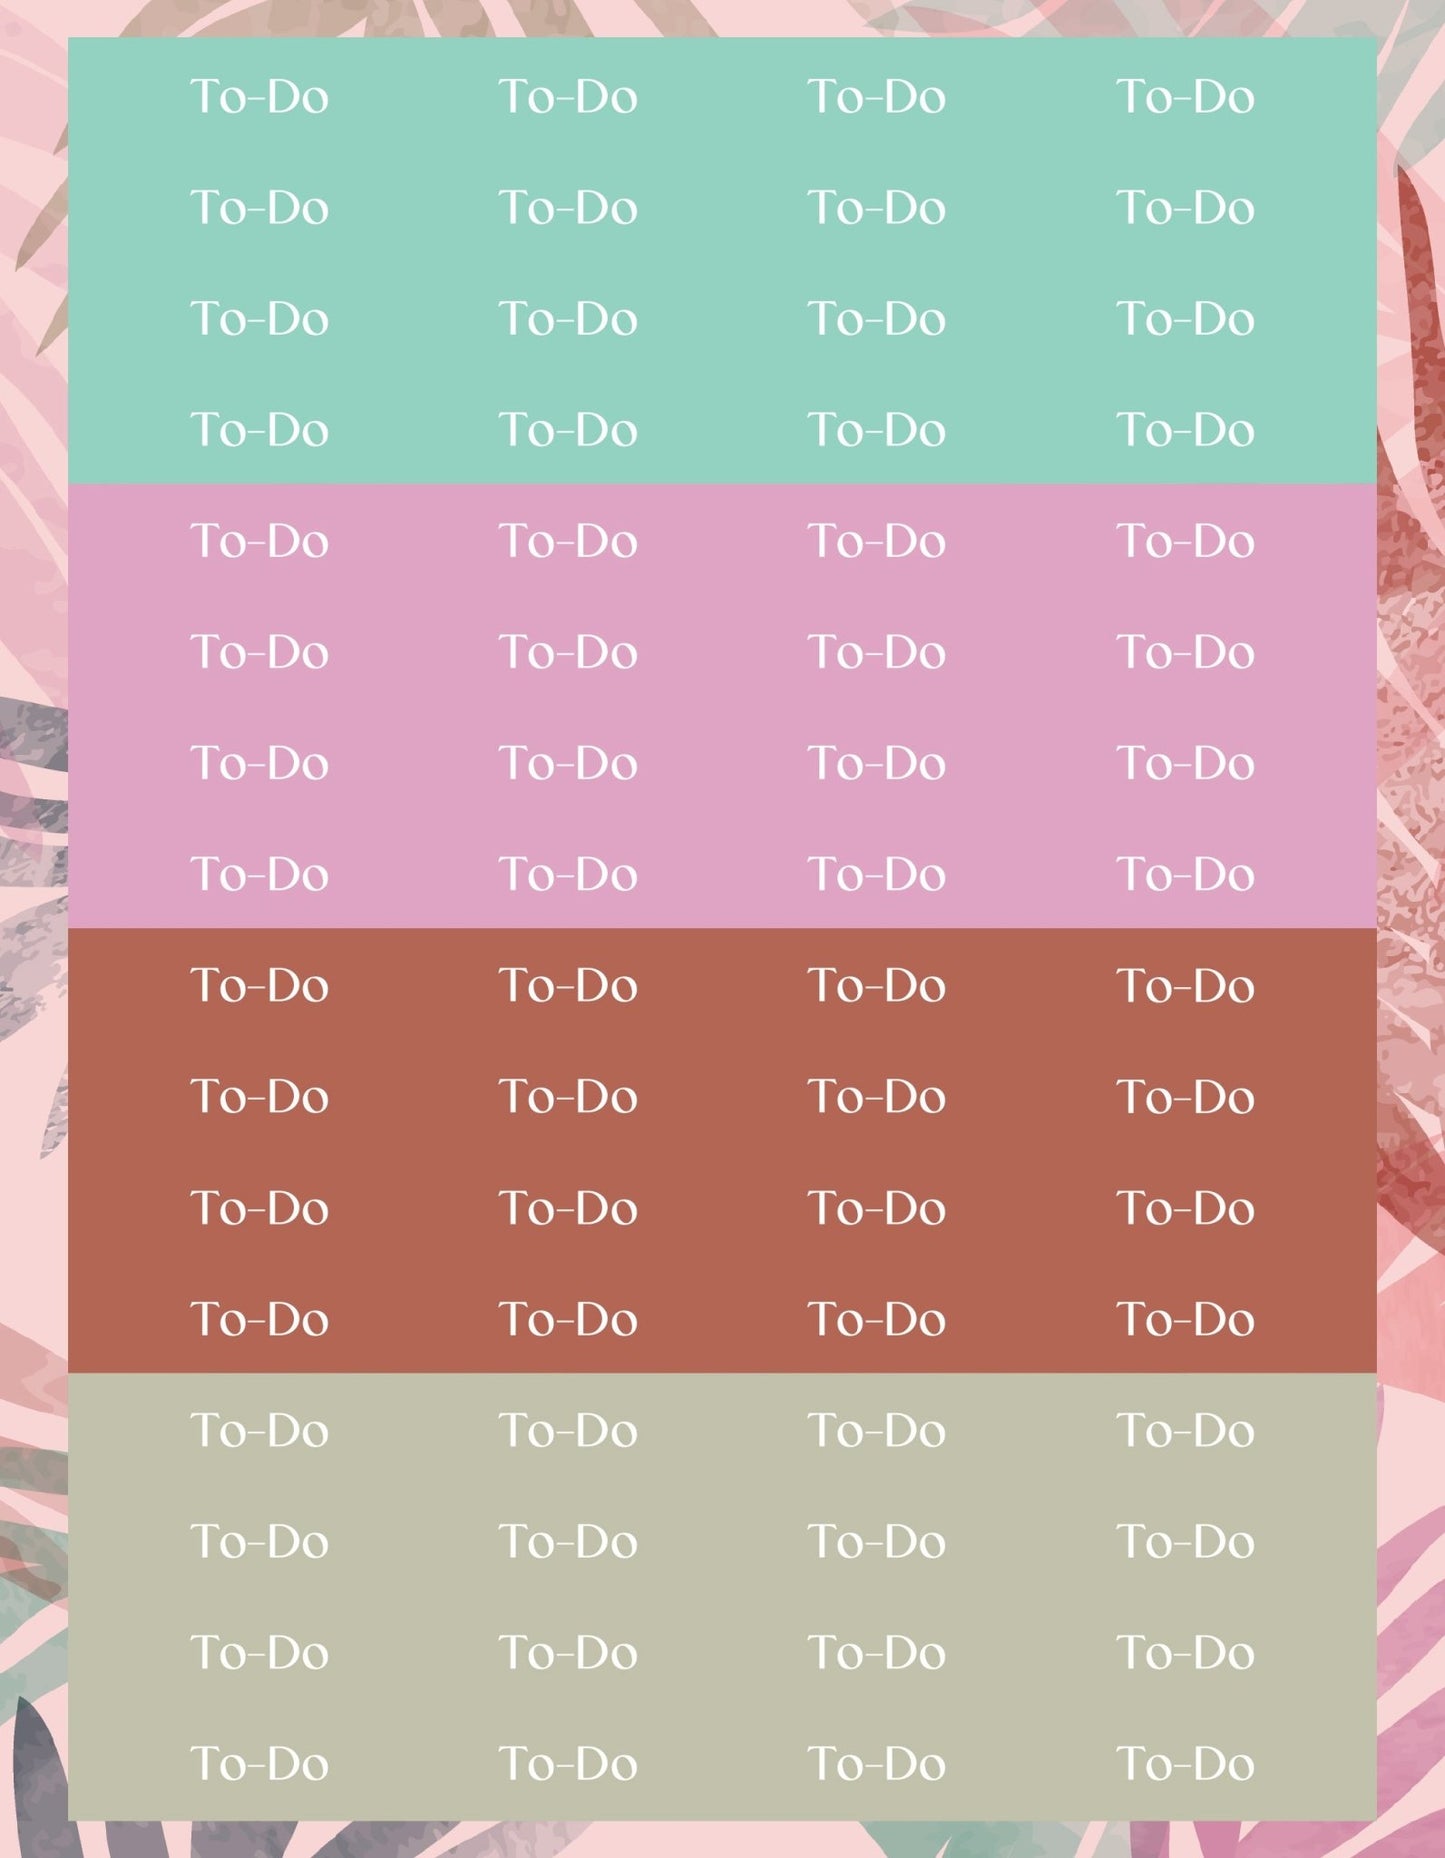 To-Do Sticker Sheets - 9 Designs/Colors - Colibri Paper Co